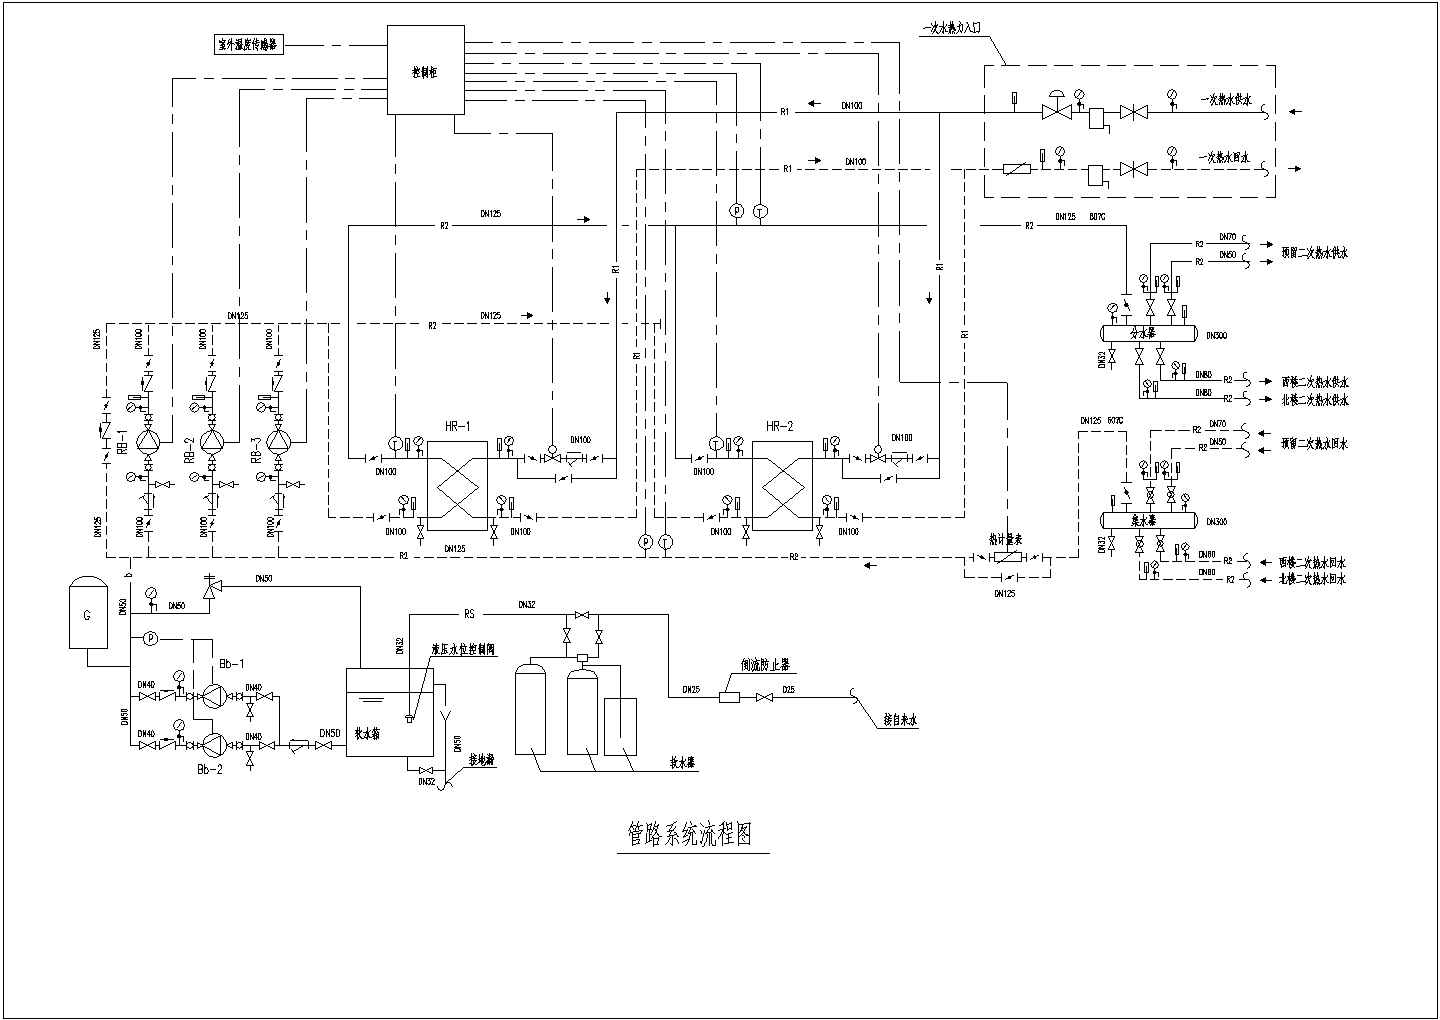 某采暖工程水-水热交换站管路系统cad流程图